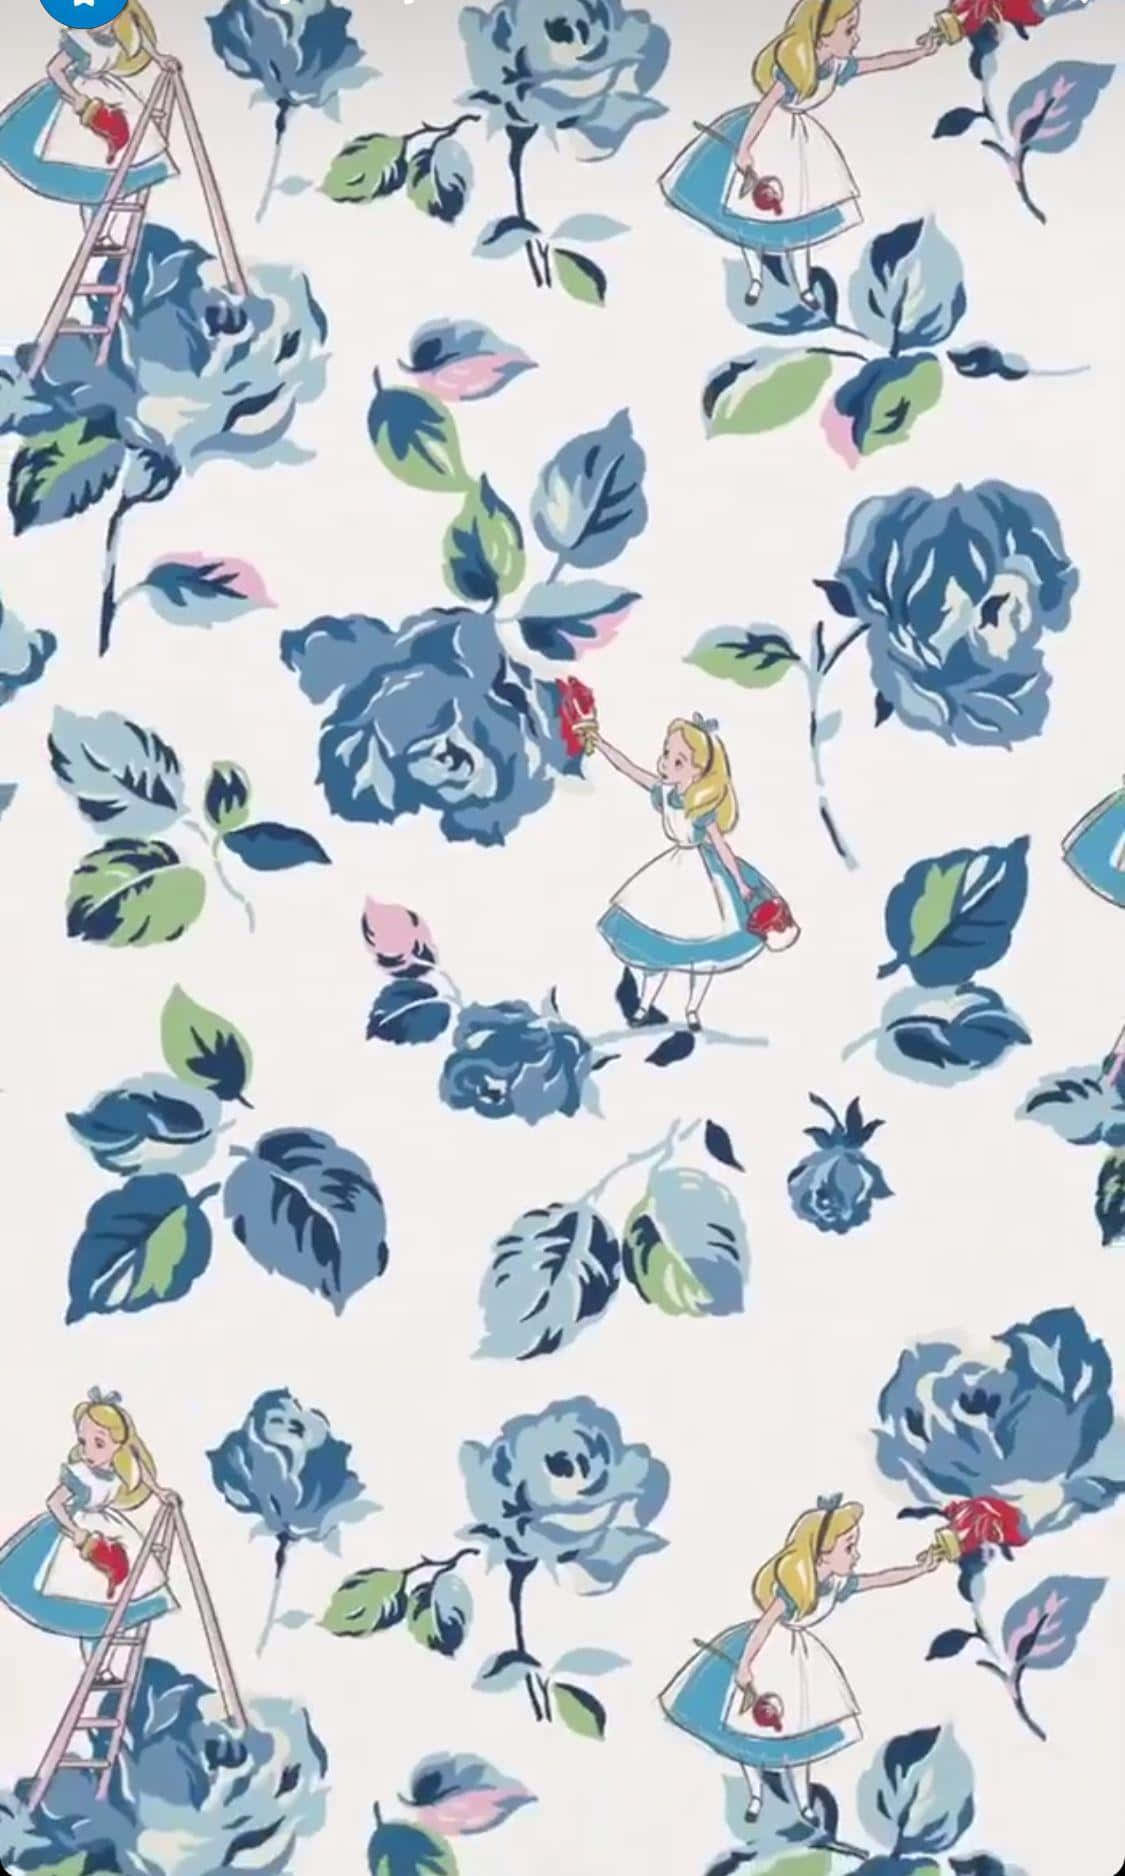 75 Alice In Wonderland Wallpaper  WallpaperSafari